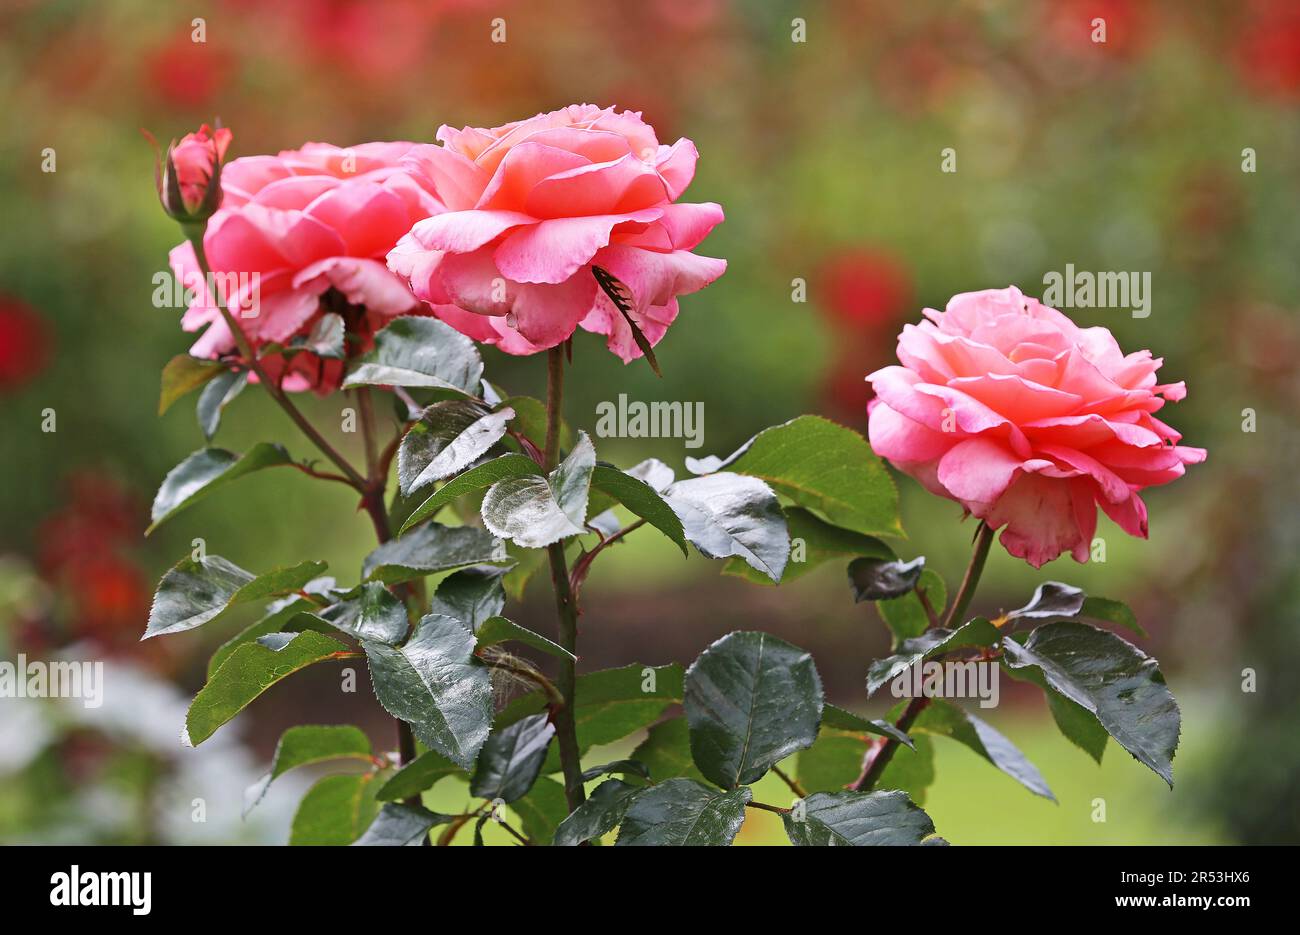 Three roses Stock Photo